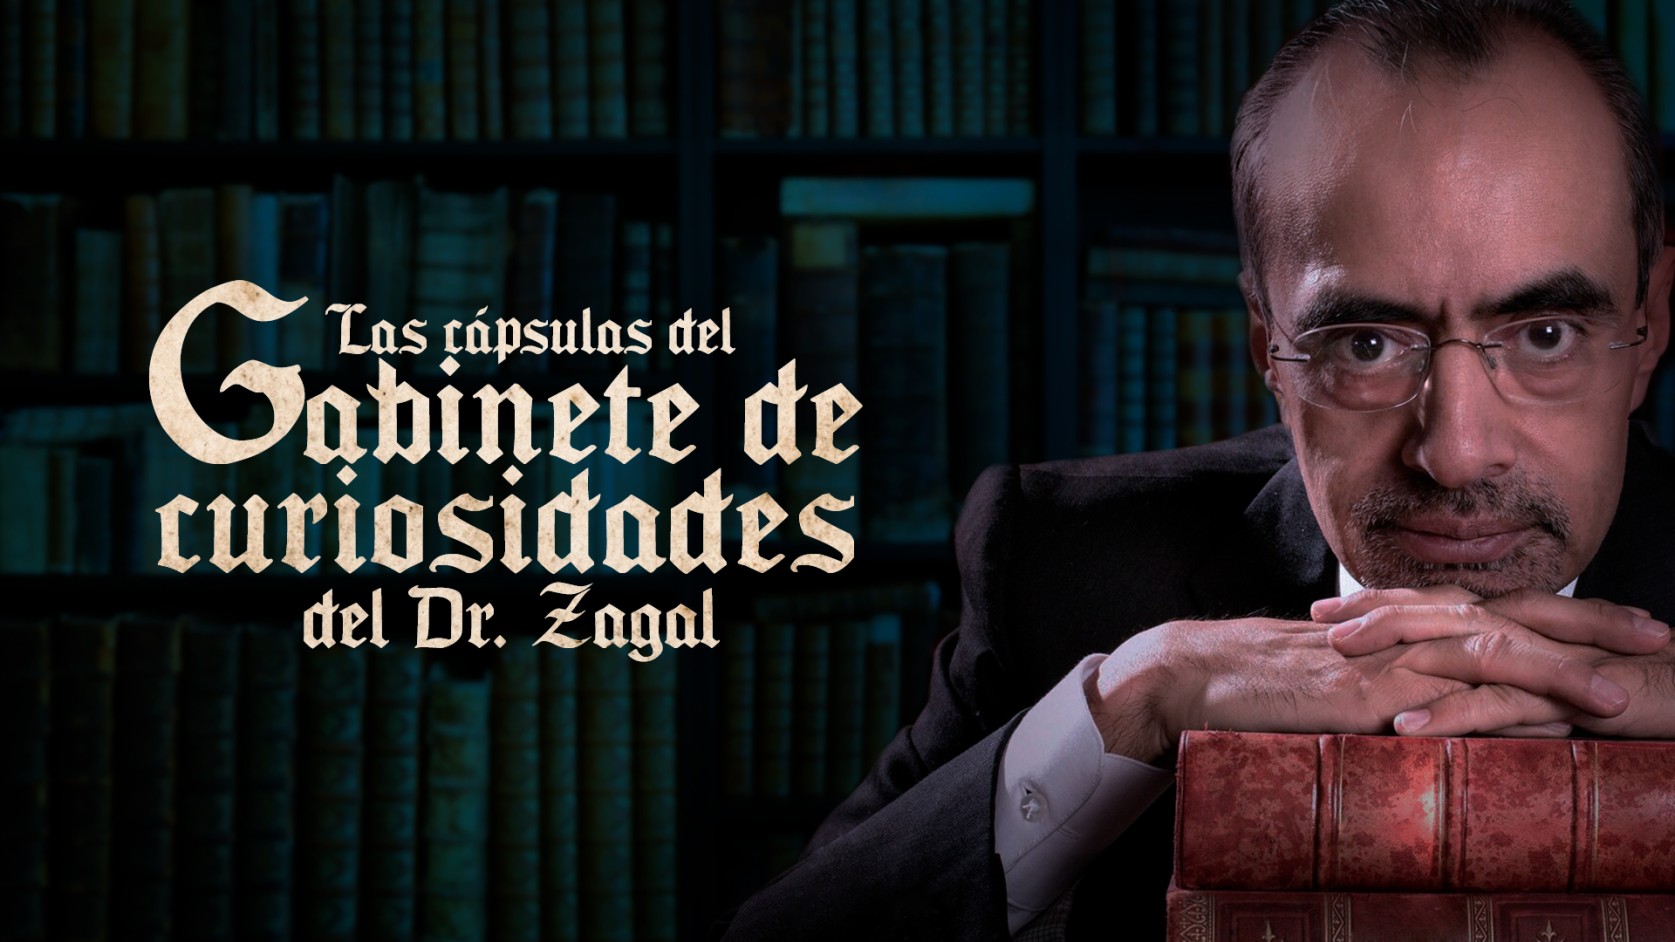 Las cápsulas del Gabinete de curiosidades del Dr. Zagal